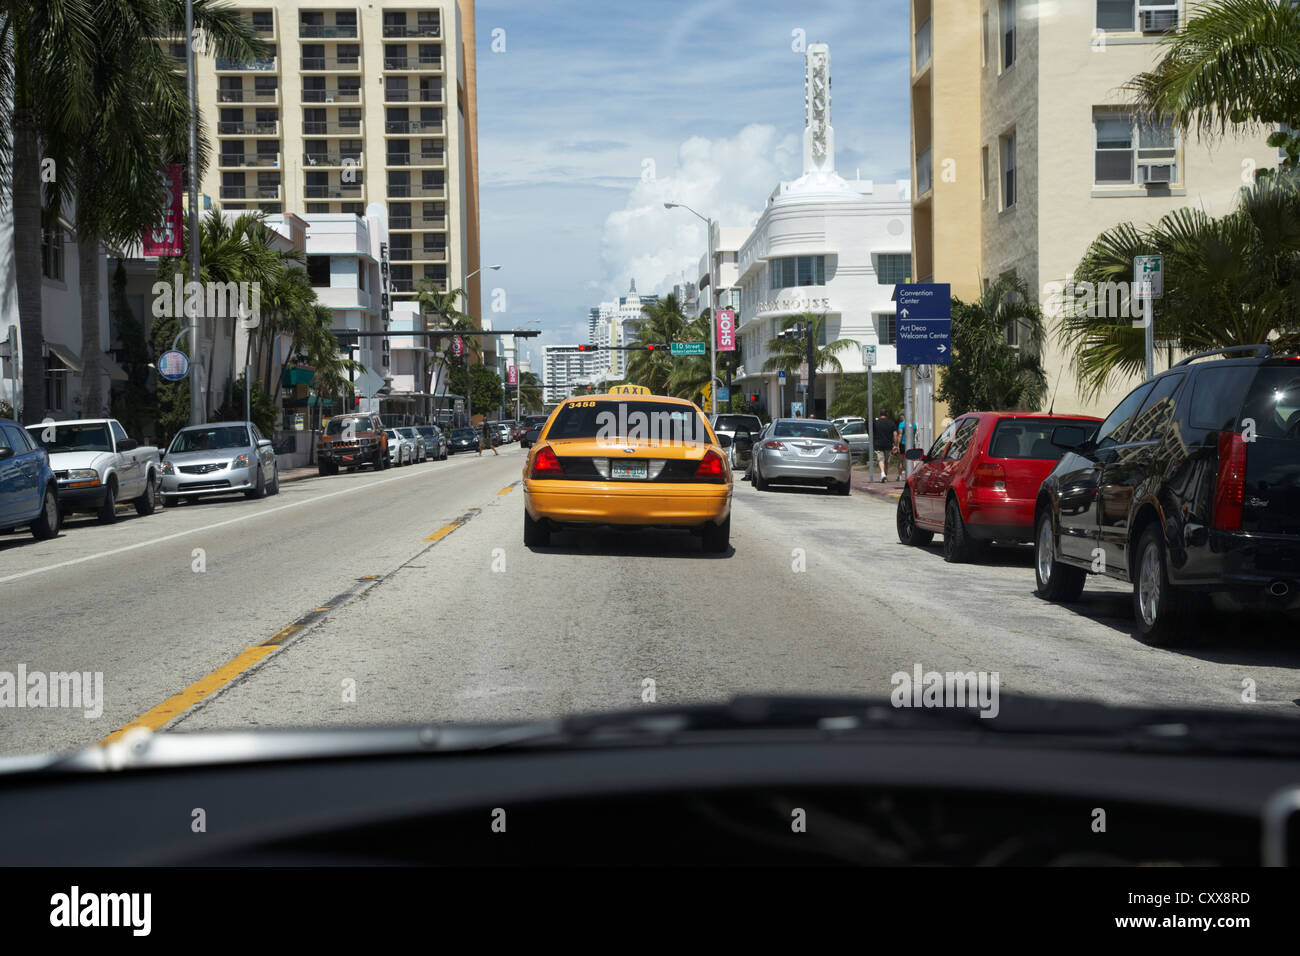 En voiture sur l'avenue Collins dans Miami South Beach à la suite d'un yellow cab, florida usa Banque D'Images